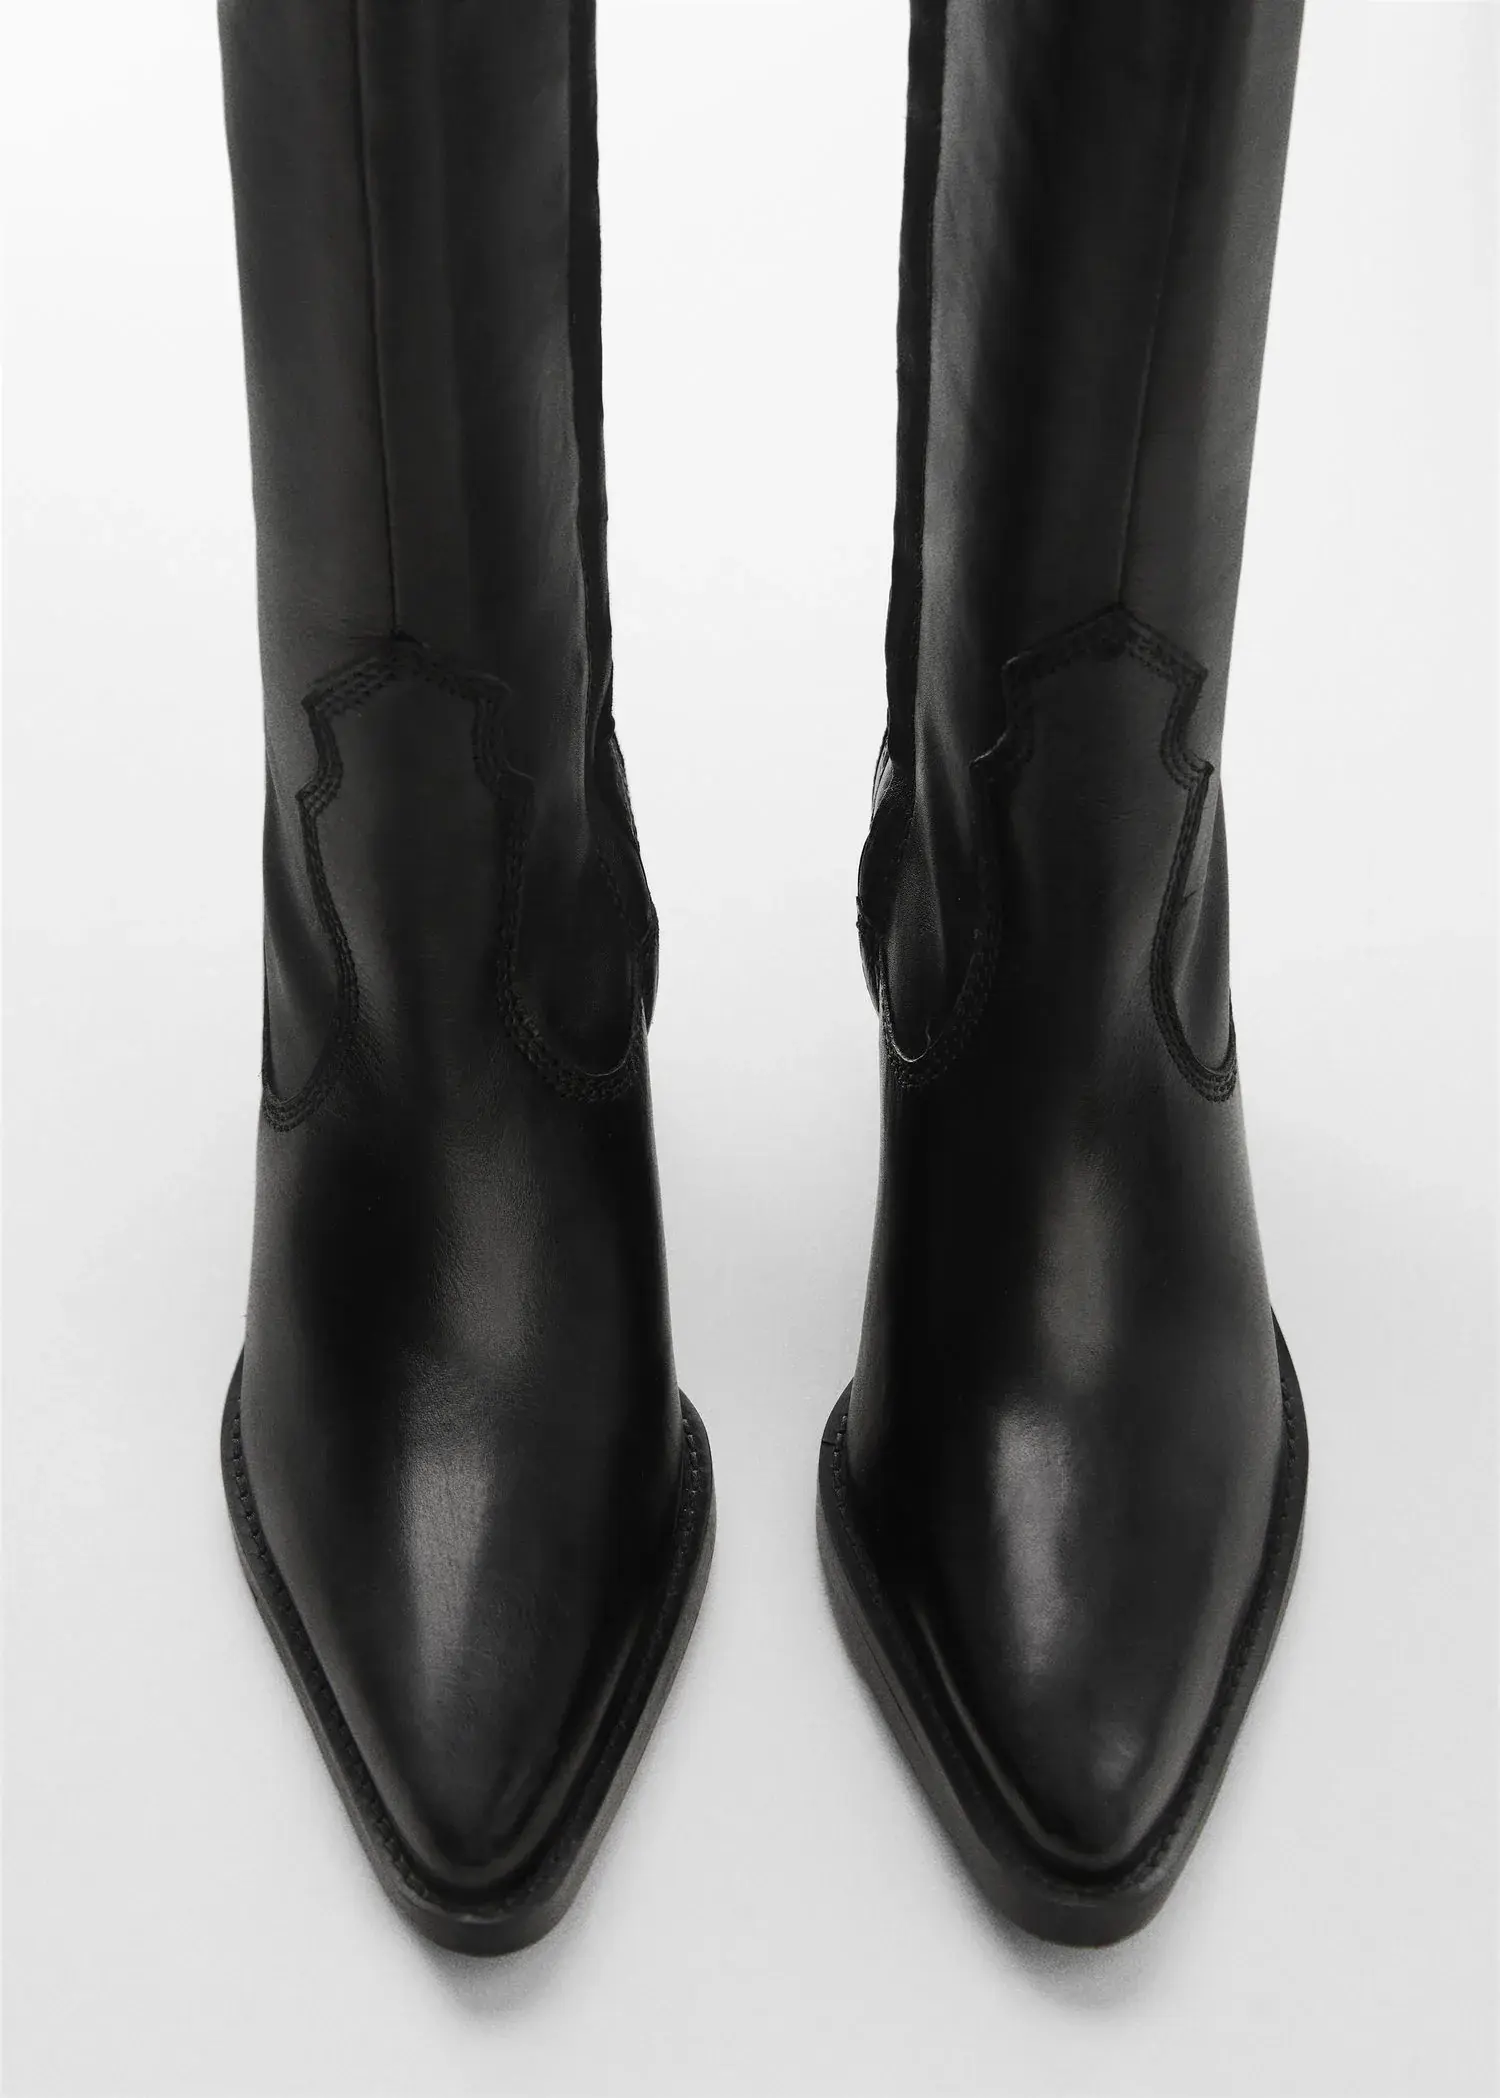 Mango High heel leather boot. 2